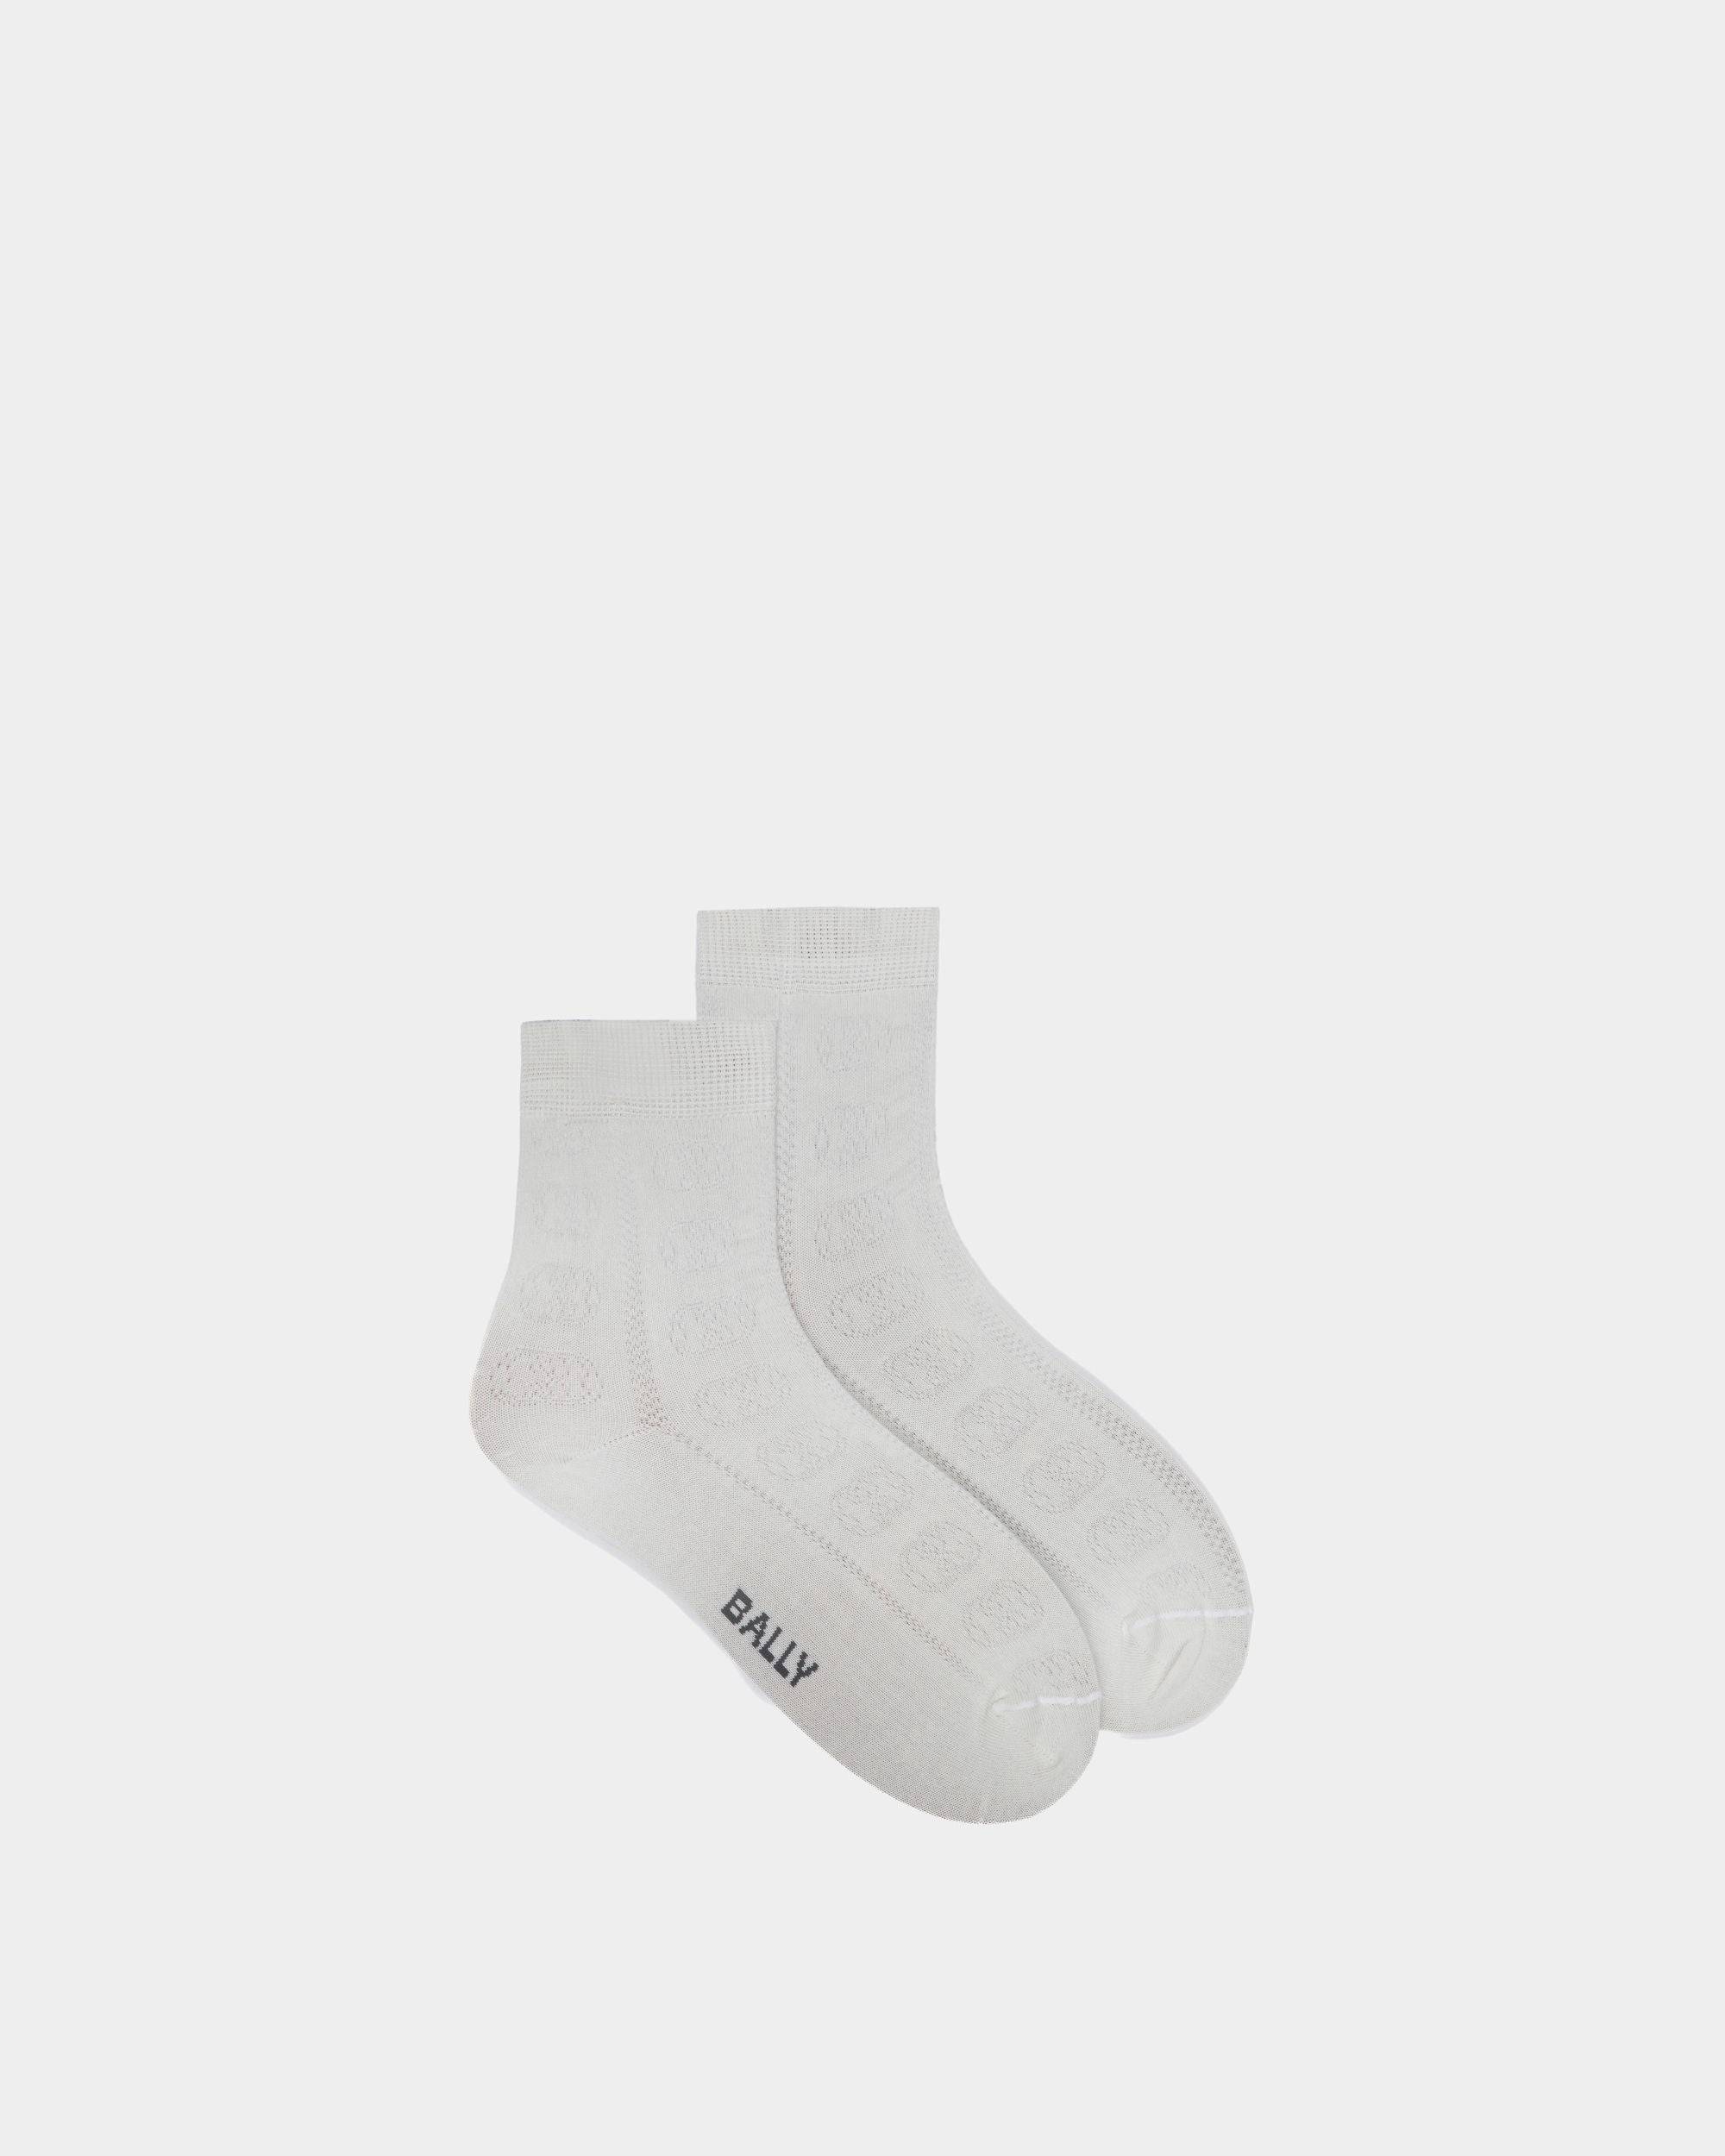 Women's Logo Socks In Beige Cotton | Bally | Still Life Top